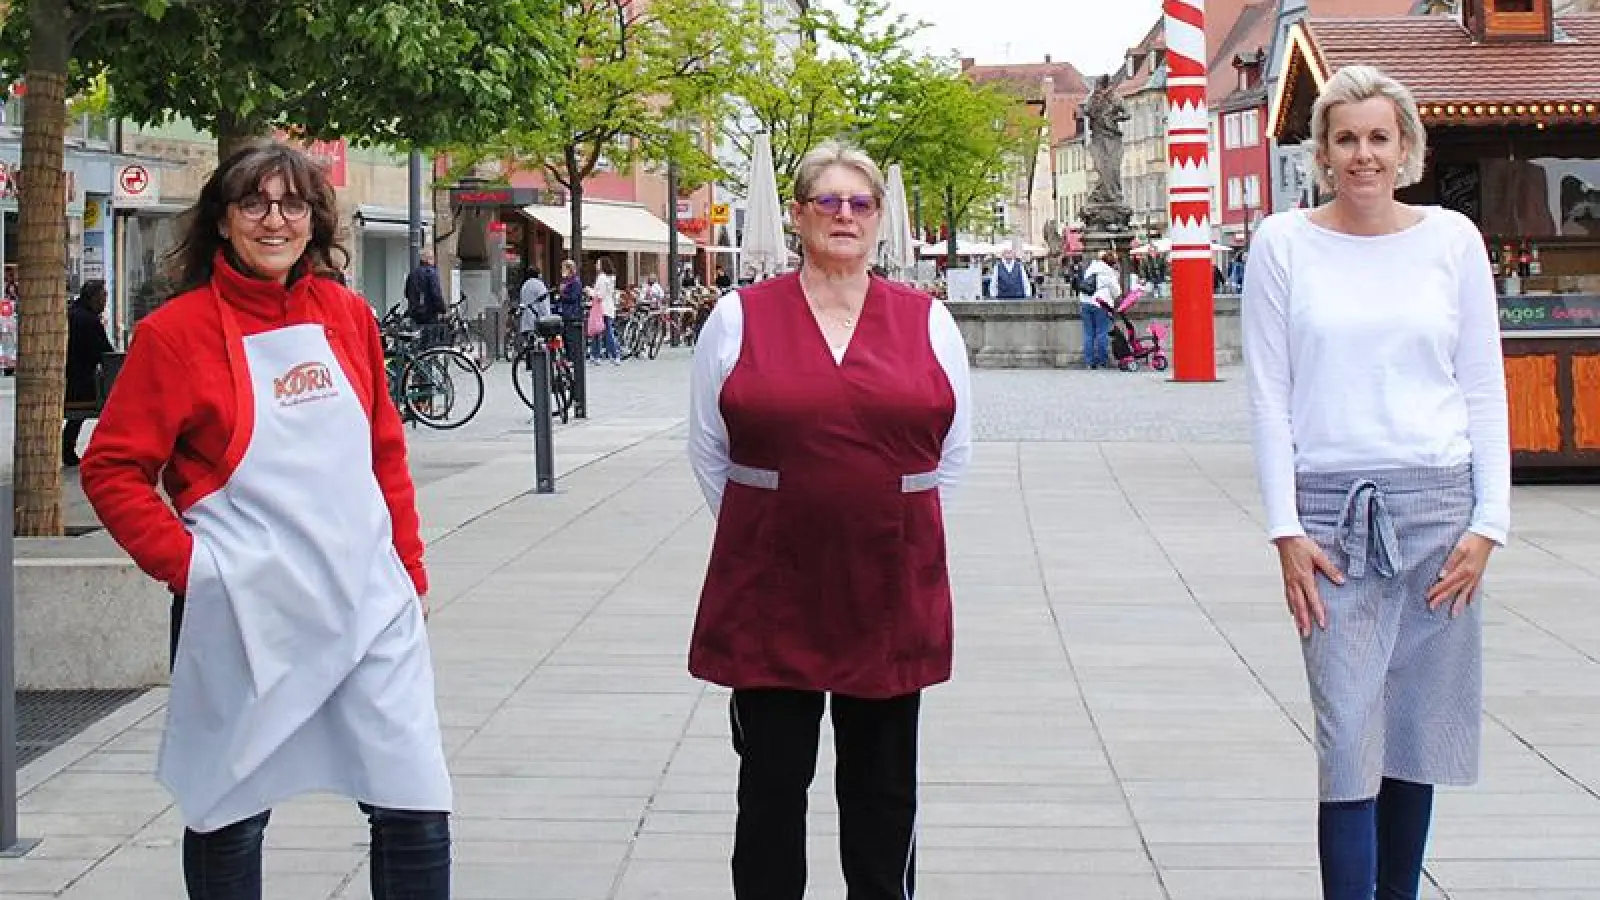 Leben in Bayreuth: Schausteller jetzt auf dem Marktplatz (Foto: Jessica Mohr)